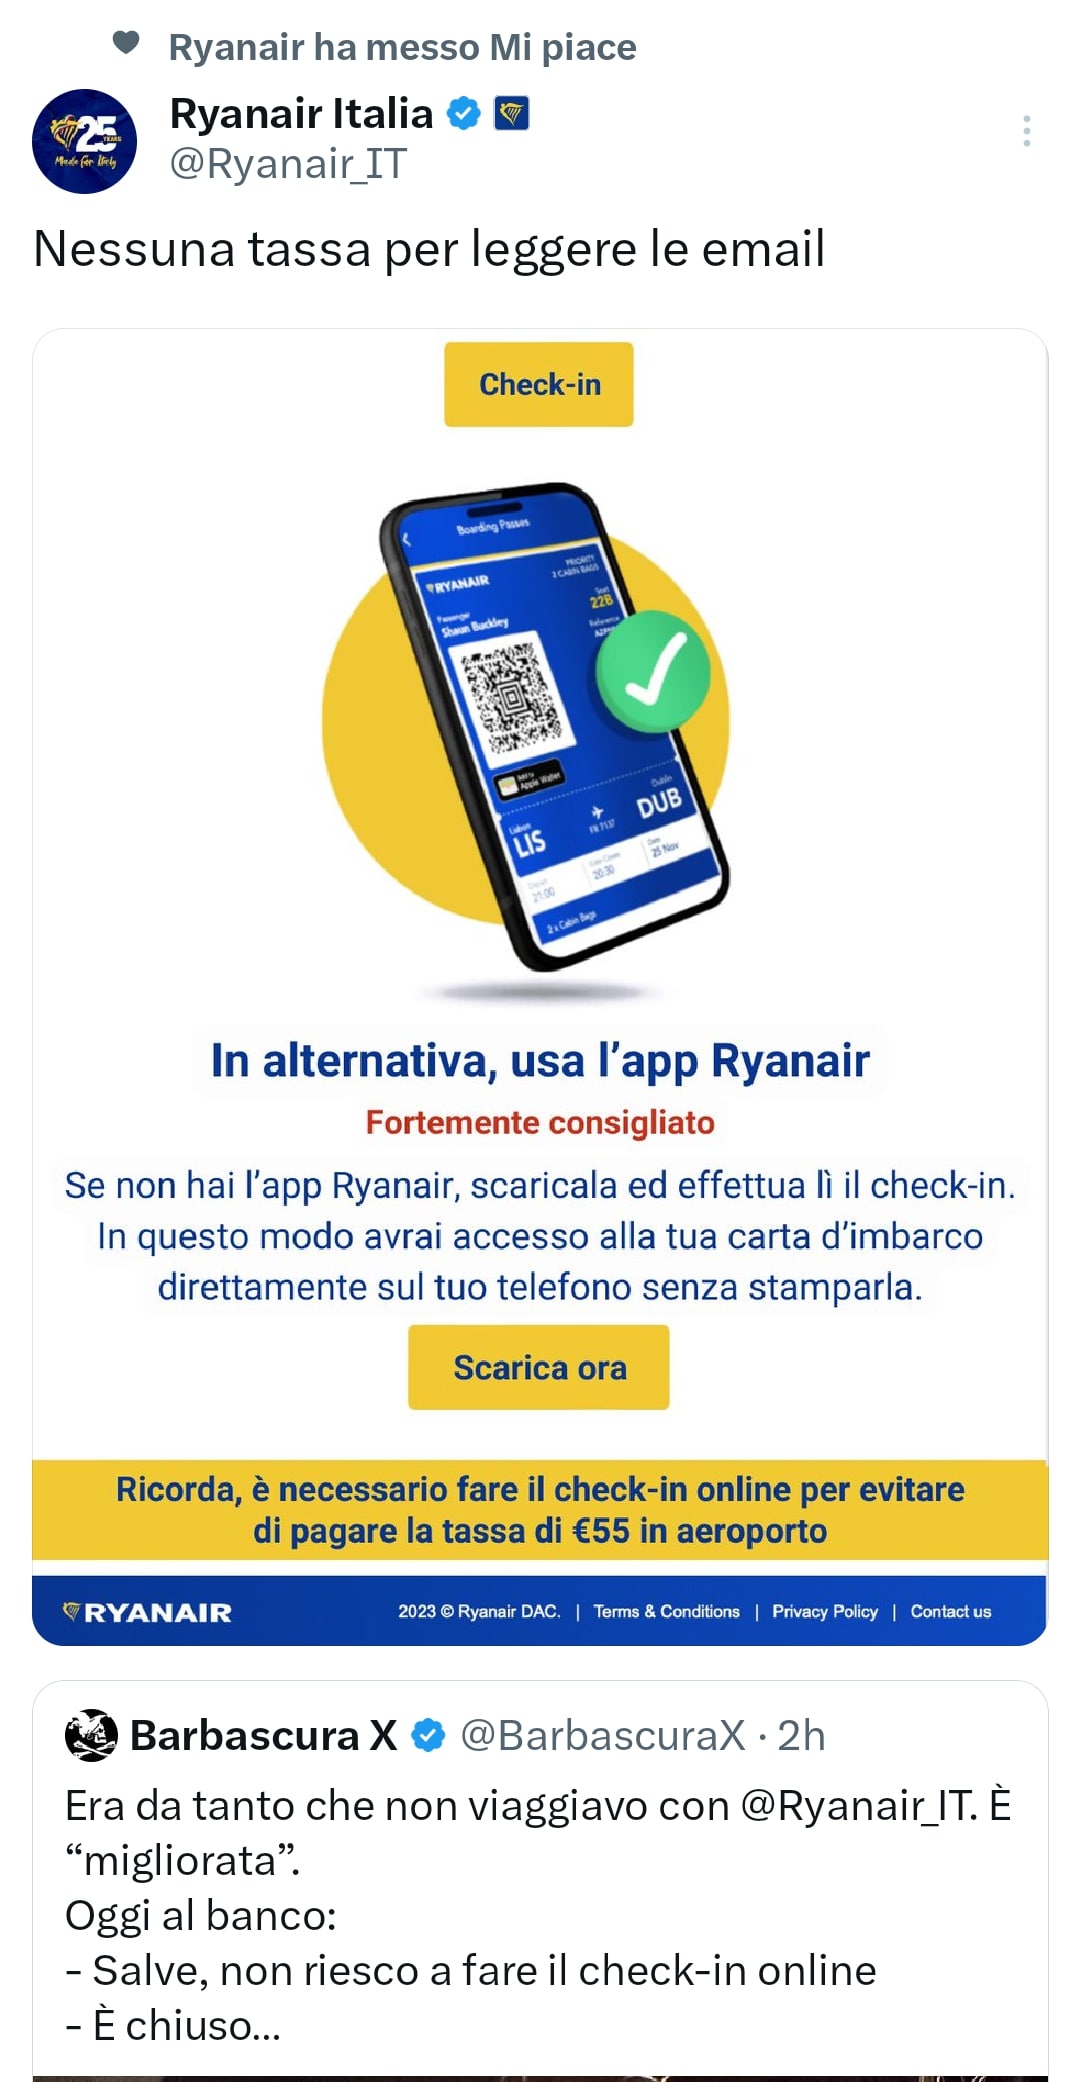 La risposta di Ryanair a Barbascura X, su X.com (in passato conosciuto come Twitter).